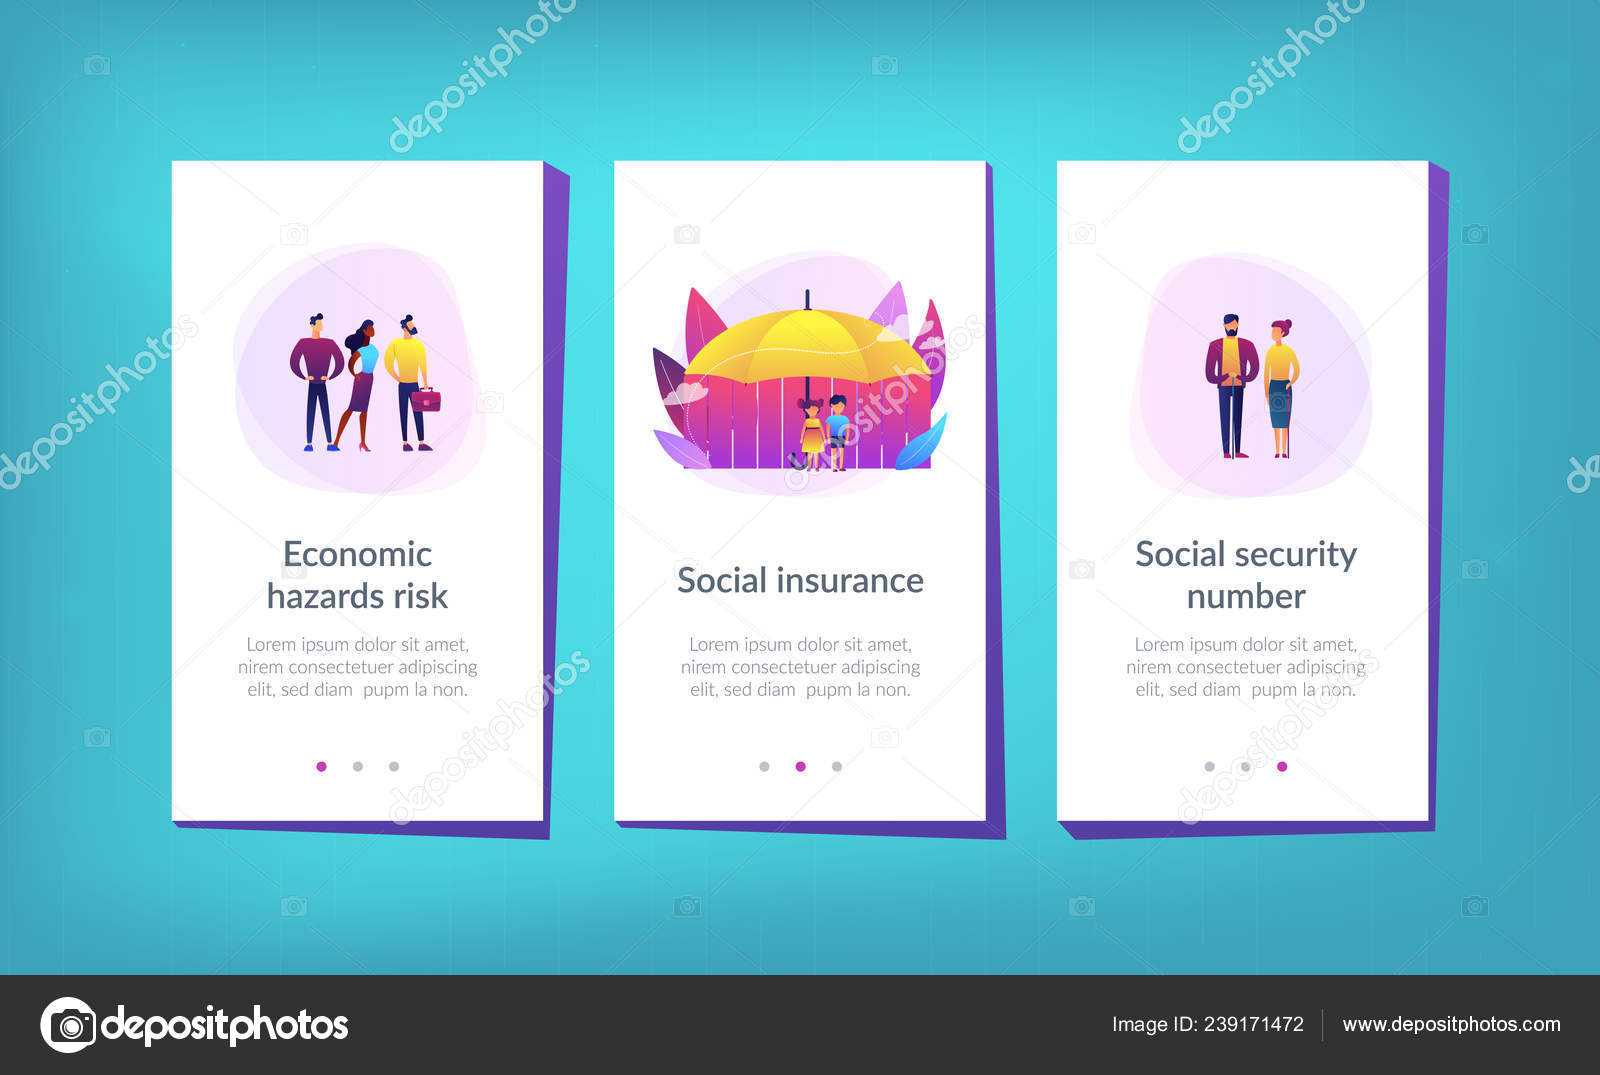 Blank Social Security Card Template | Social Insurance App Throughout Blank Social Security Card Template